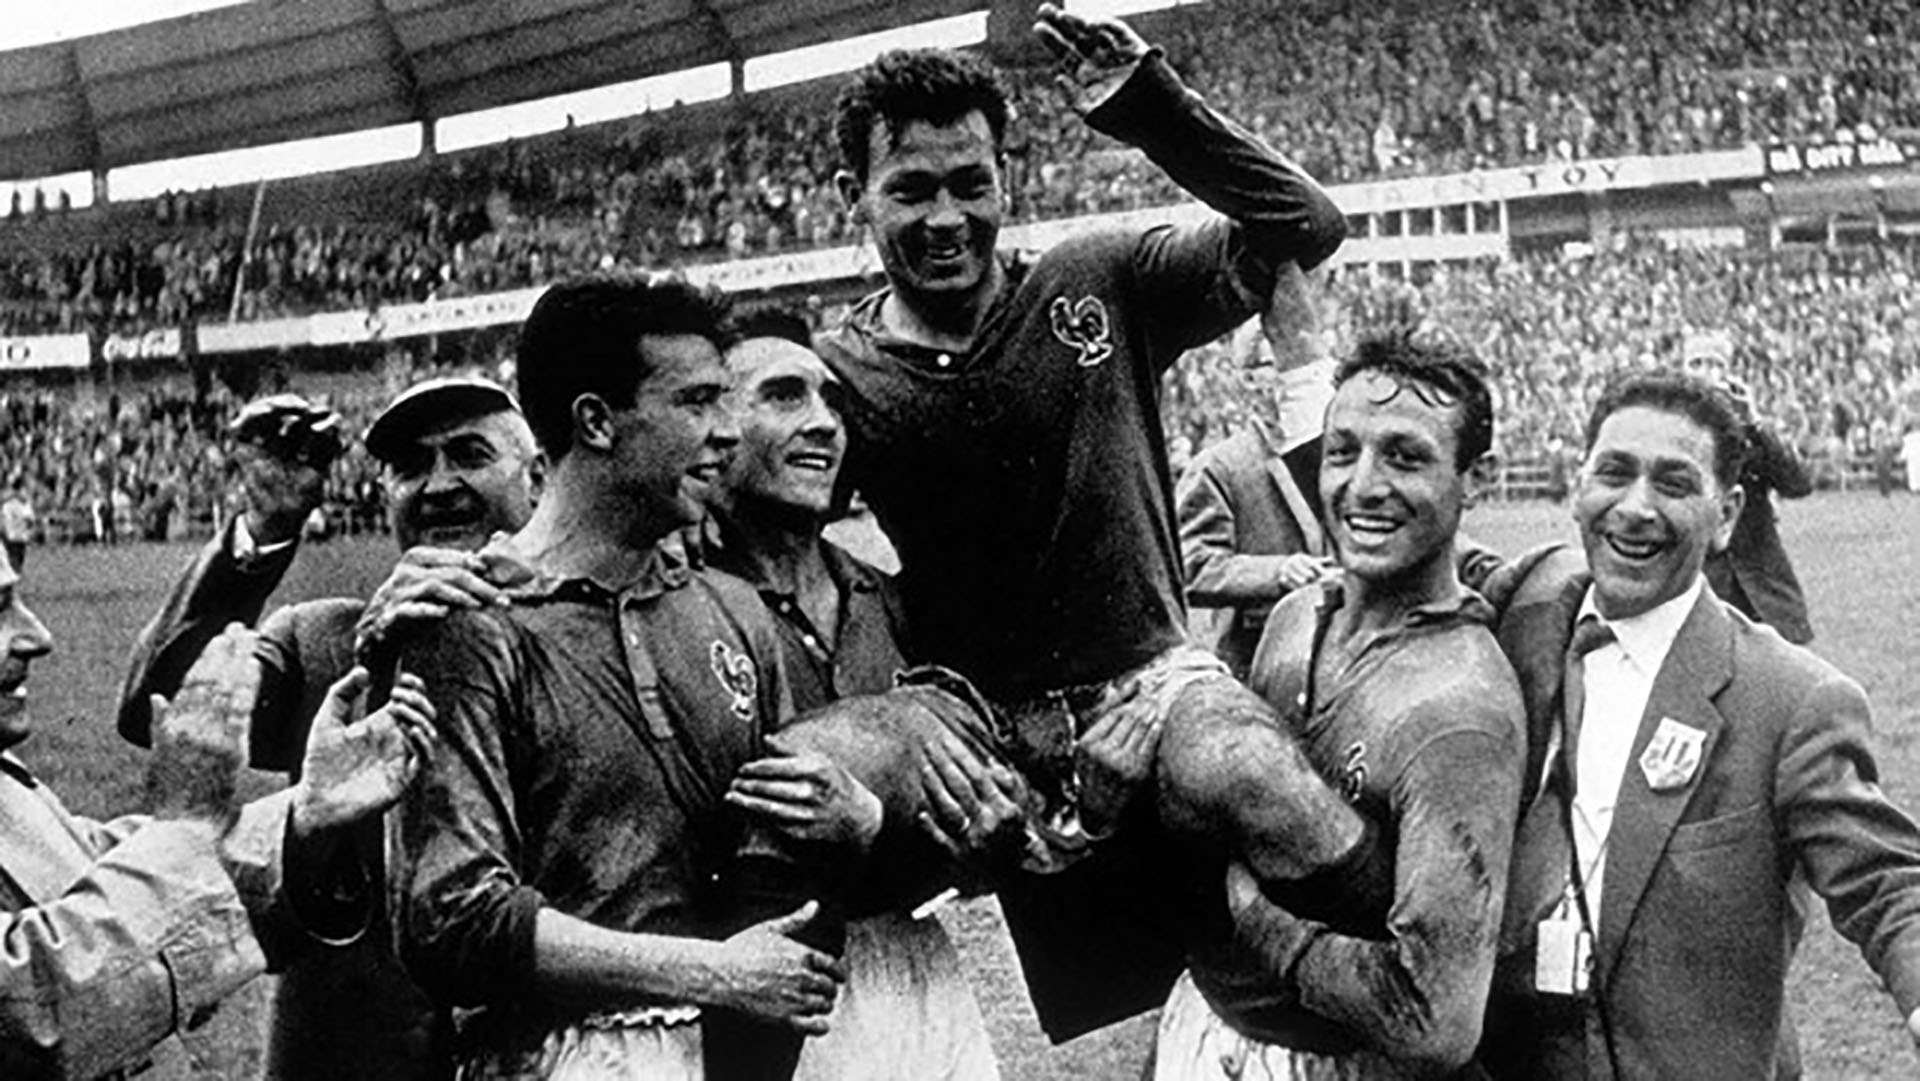 Just Fontaine celebra en el Mundial 1958, donde anotó 13 goles y estableció un récord que todavía está vigente (Getty Images)